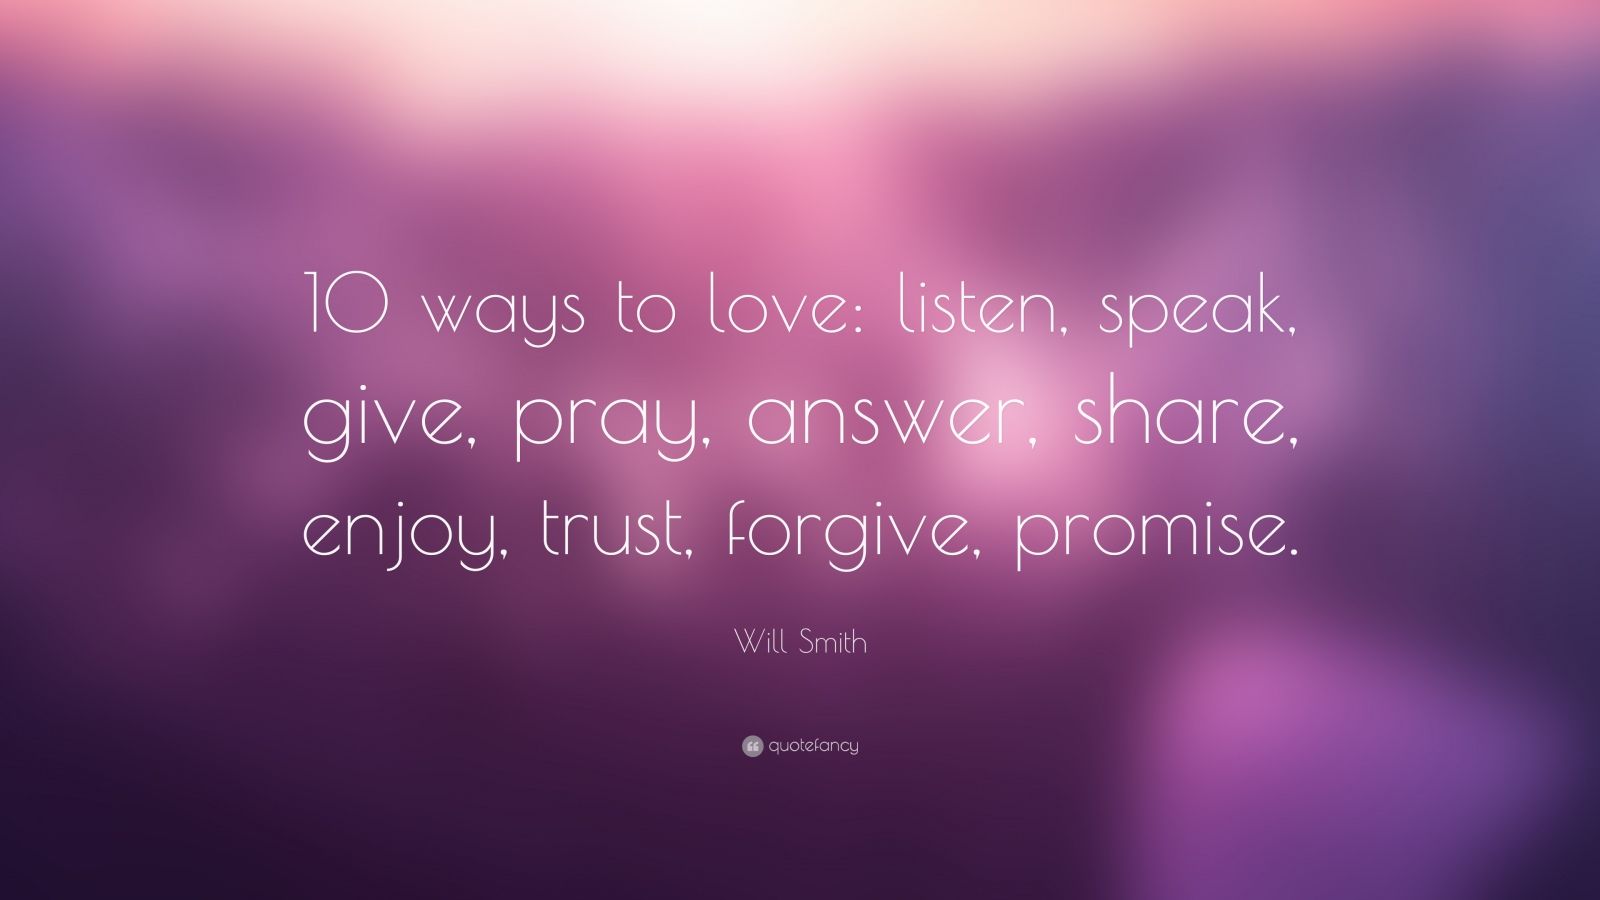 Will Smith Quote “10 ways to love listen speak give